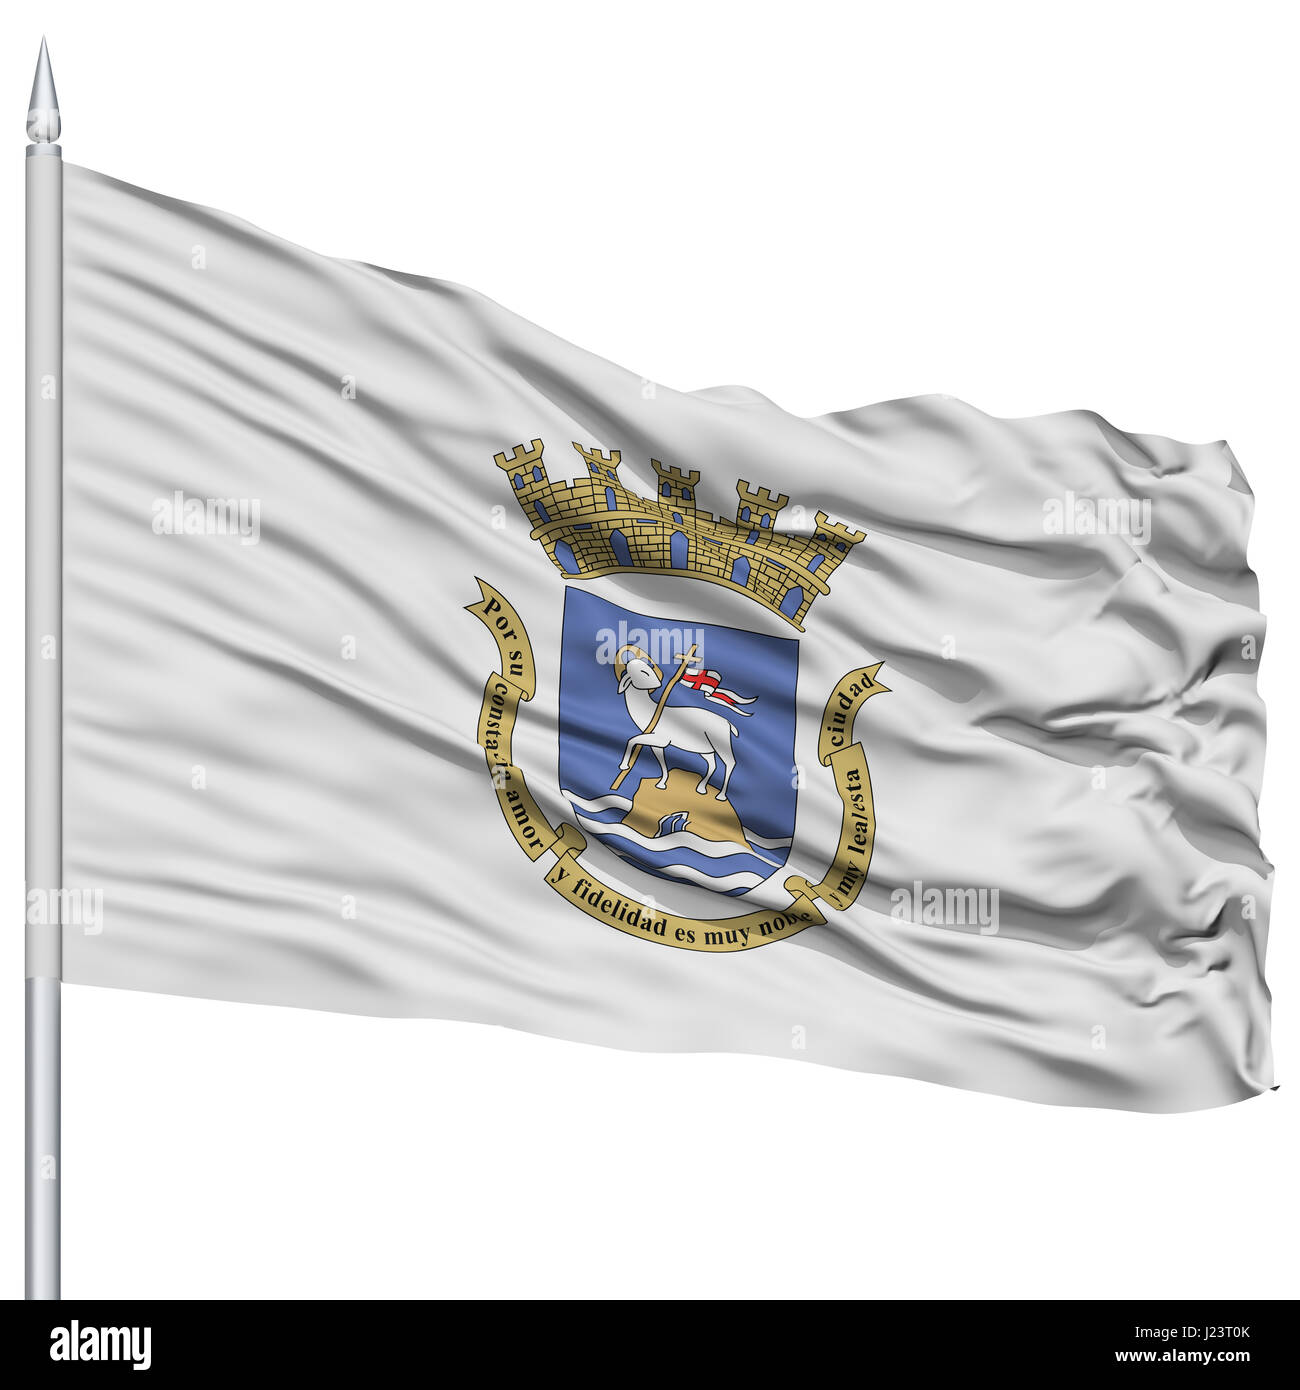 San Juan-Flagge am Fahnenmast, Hauptstadt von Puerto Rico Zustand, fliegen im Wind, Isolated on White Background Stockfoto